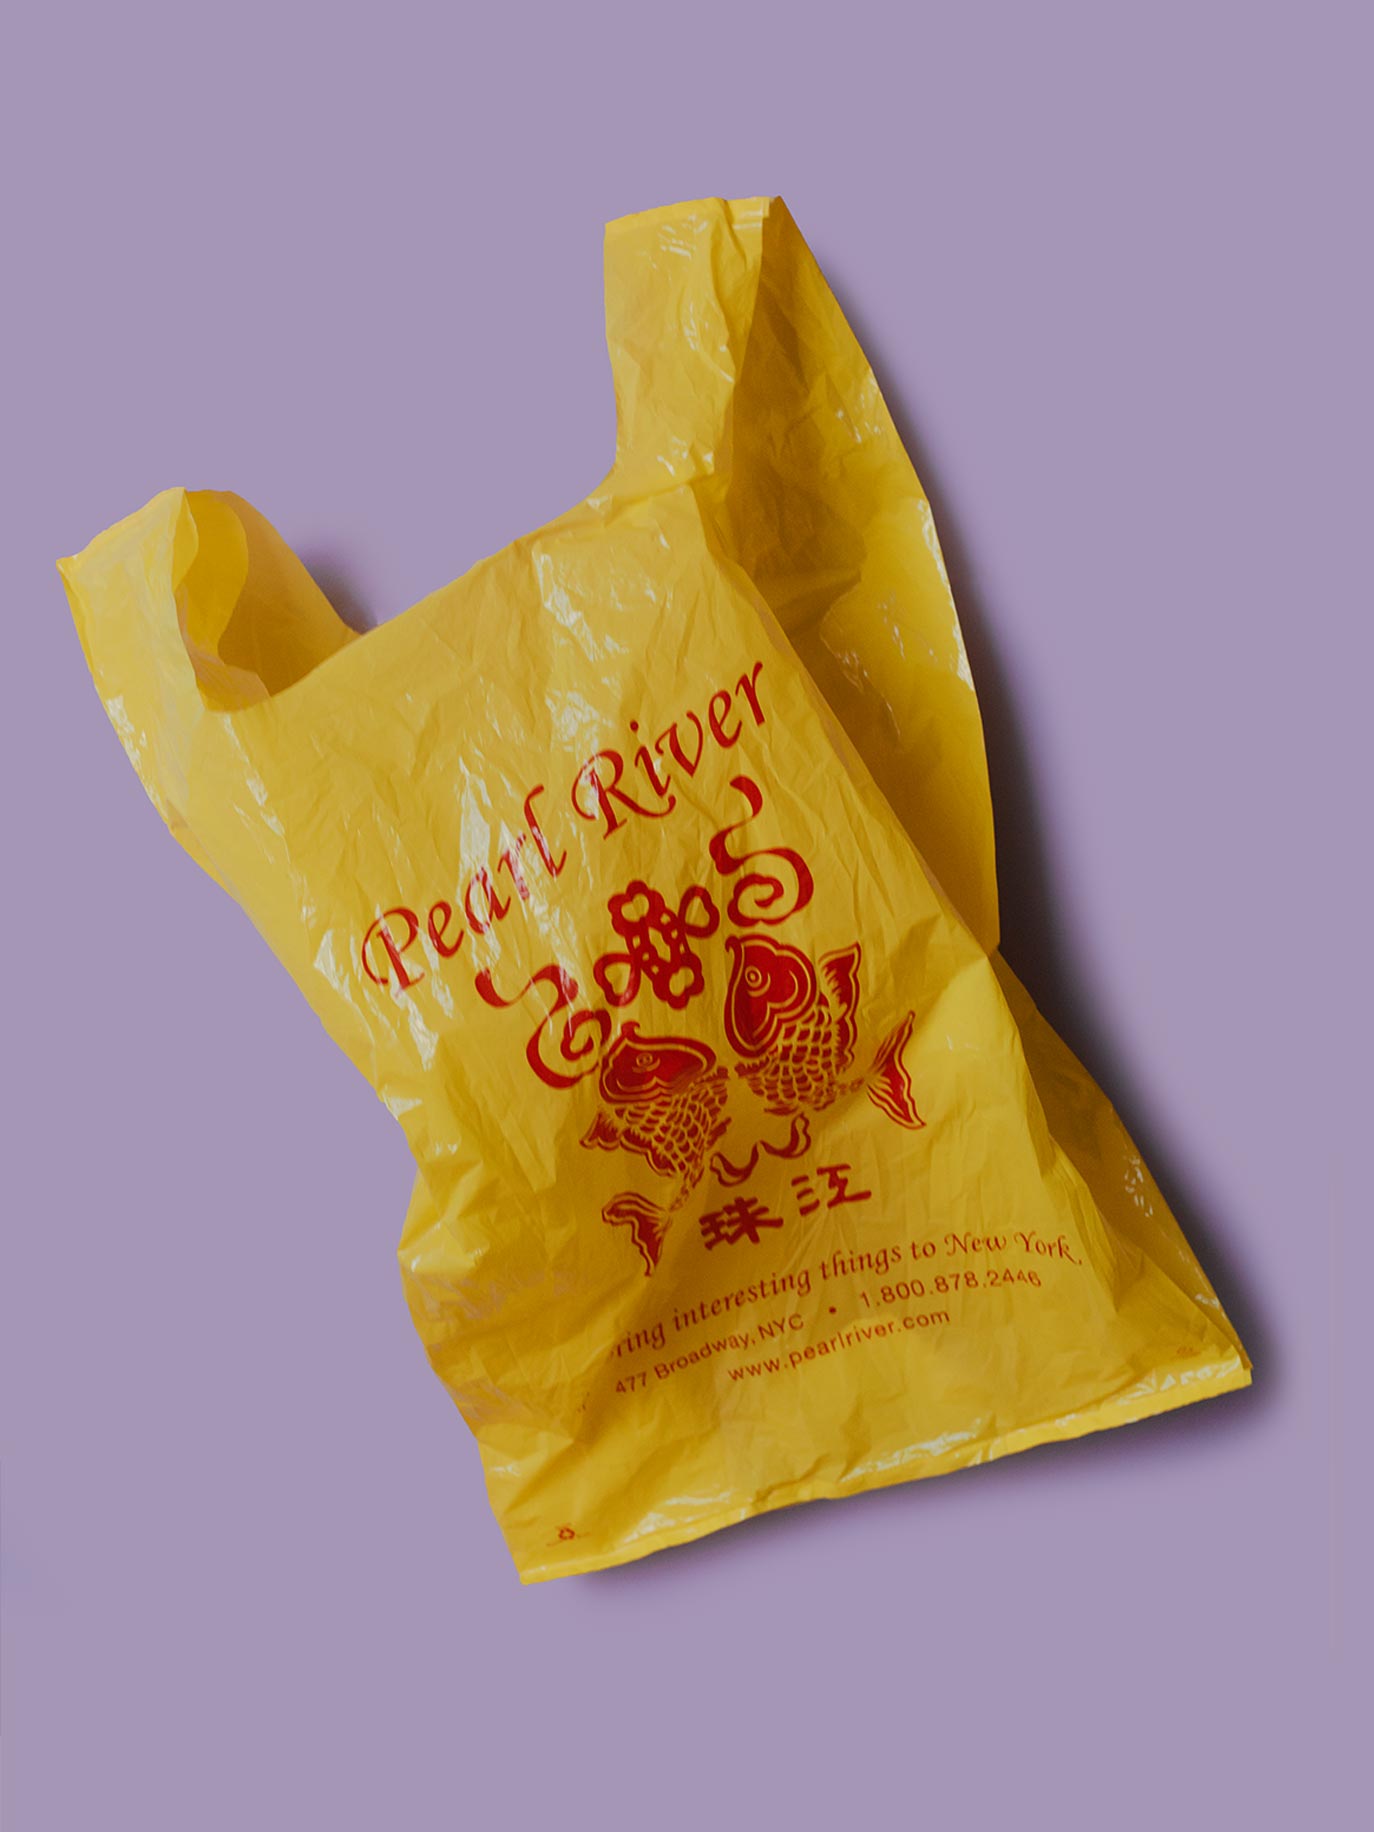 Plastic Paper explores the 'urban flotsam' of plastic bag design